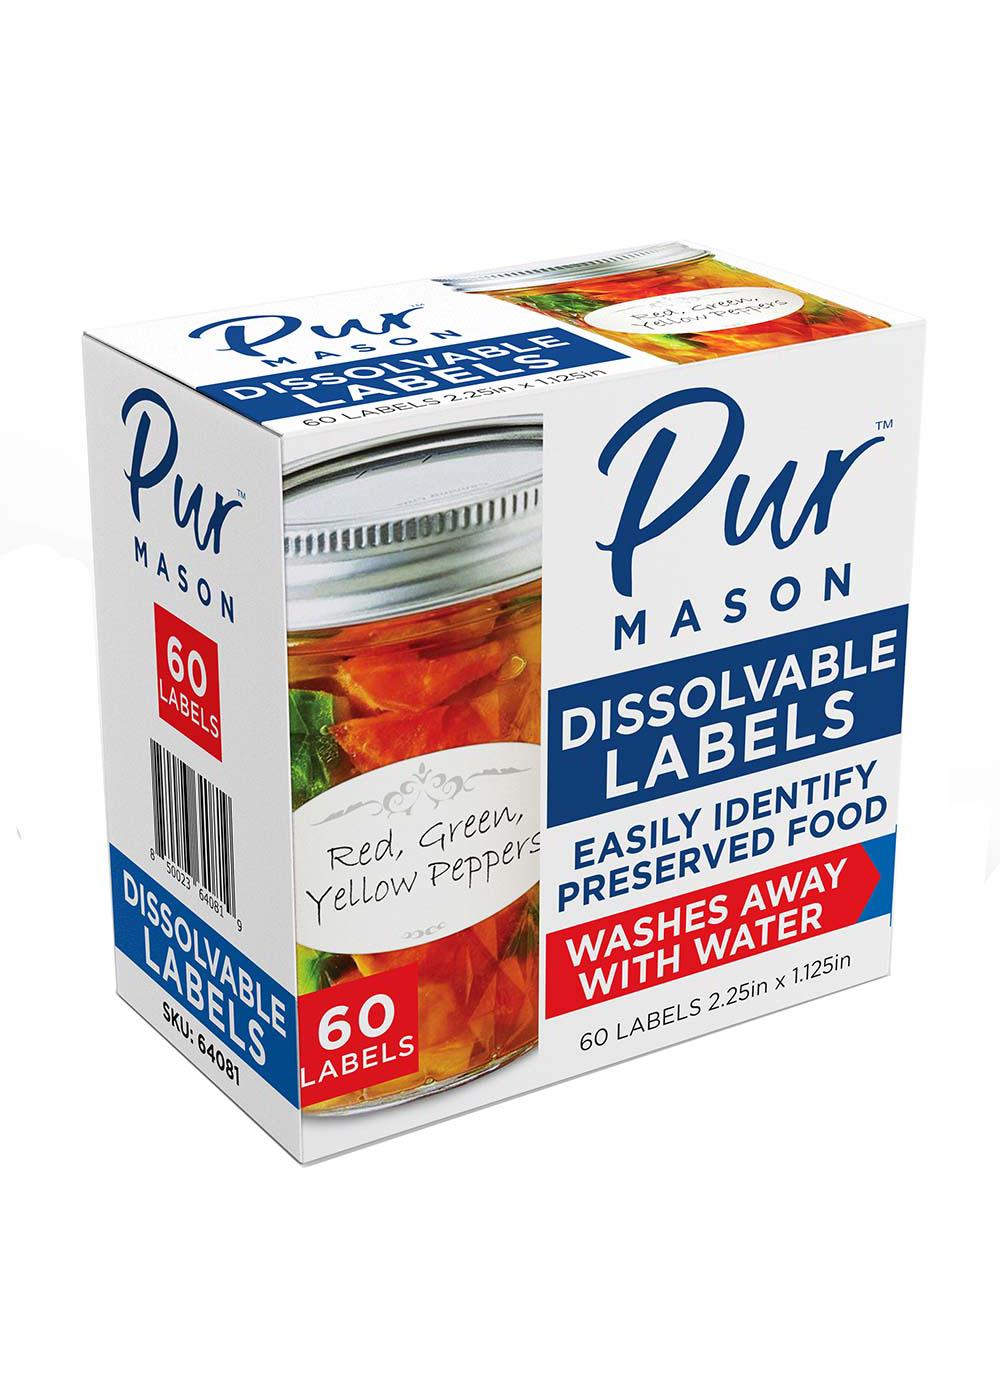 Pur Mason Dissolvable Jar Labels; image 1 of 2